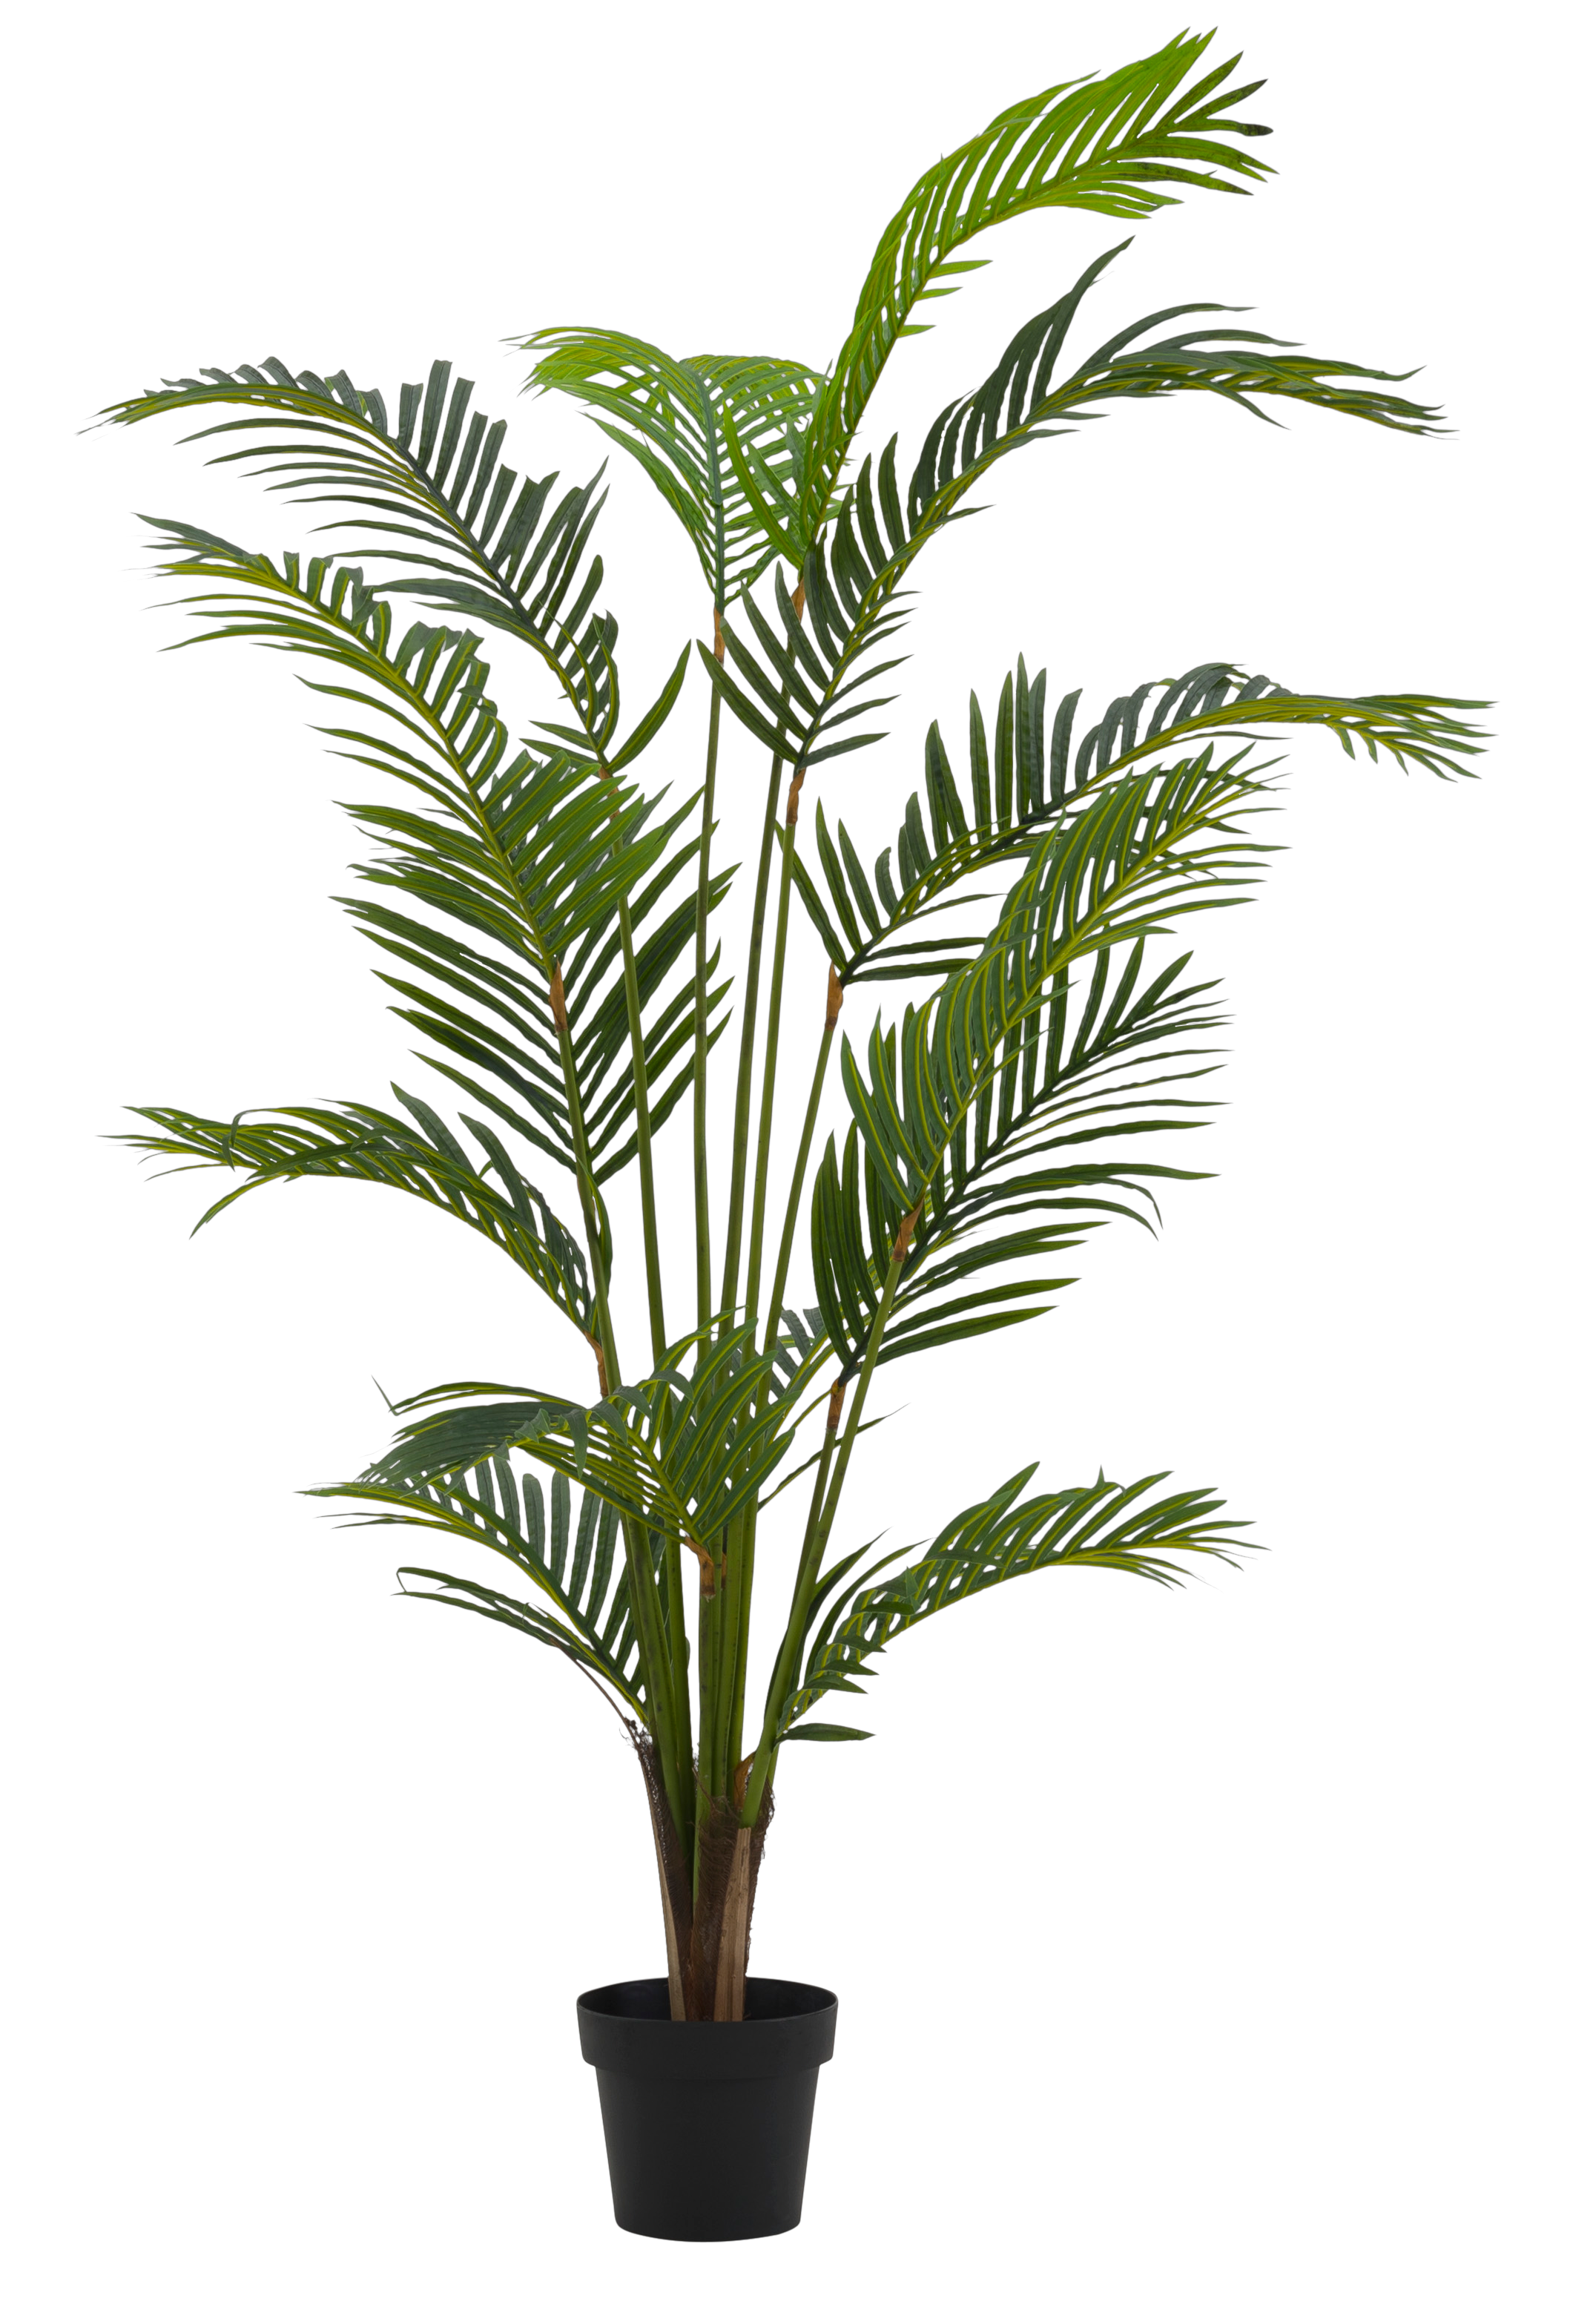 Planta artificial Palmera 166 cm